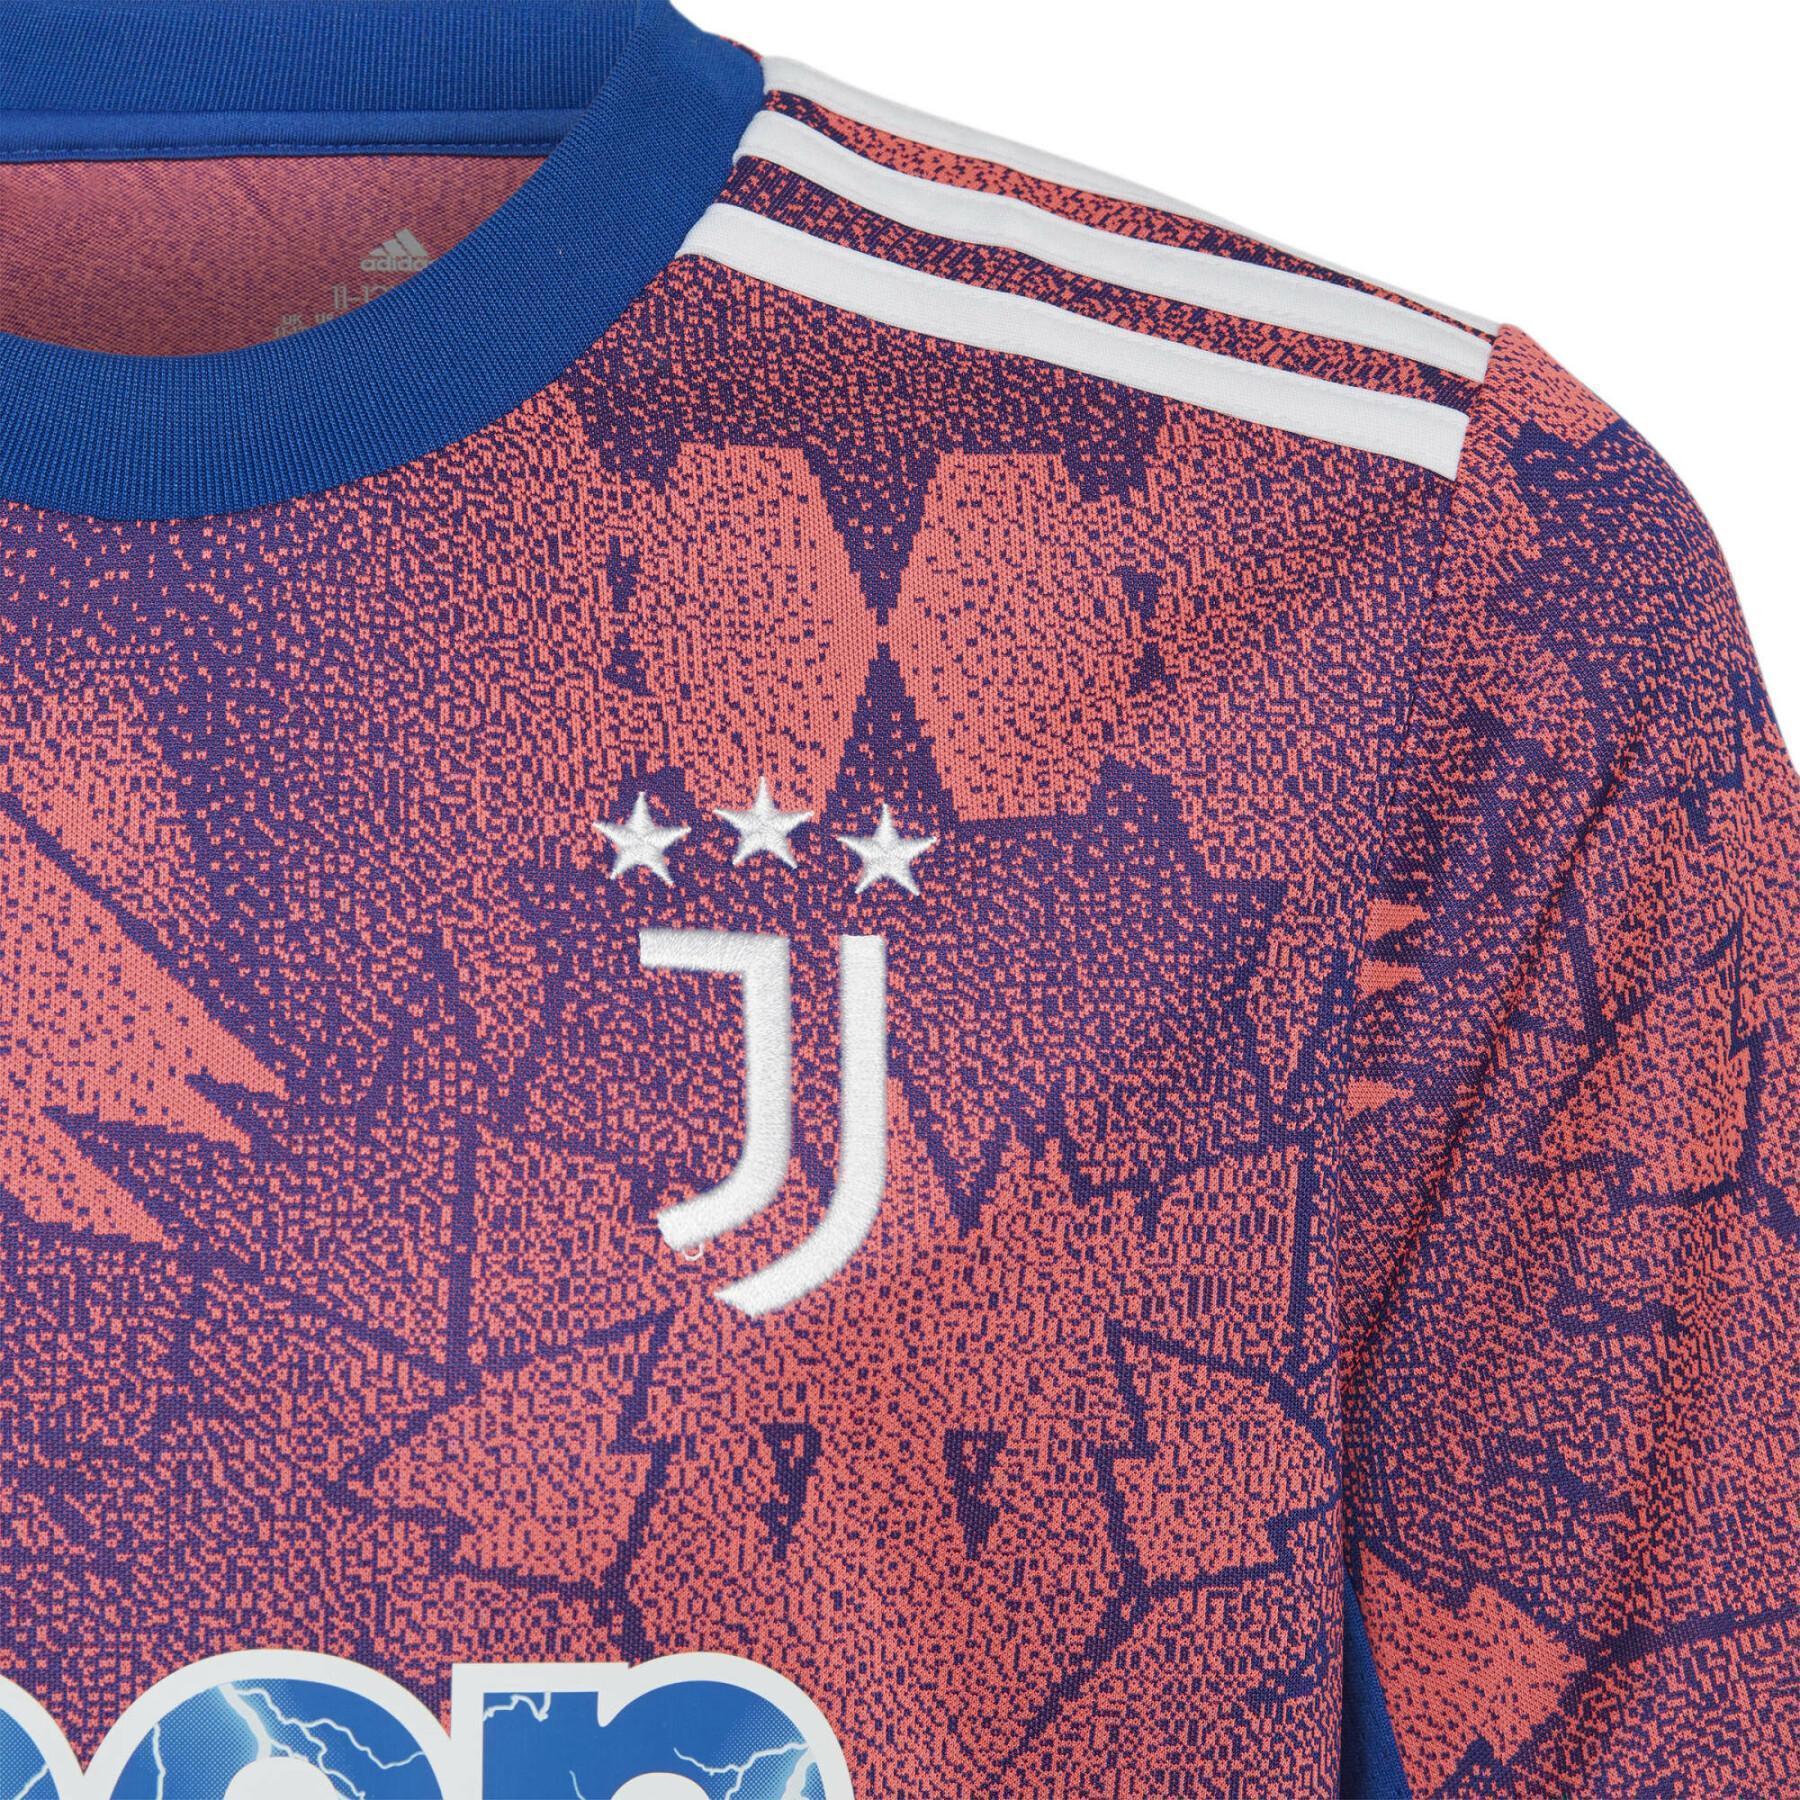 Trzecia koszulka dla dzieci Juventus Turin 2022/23